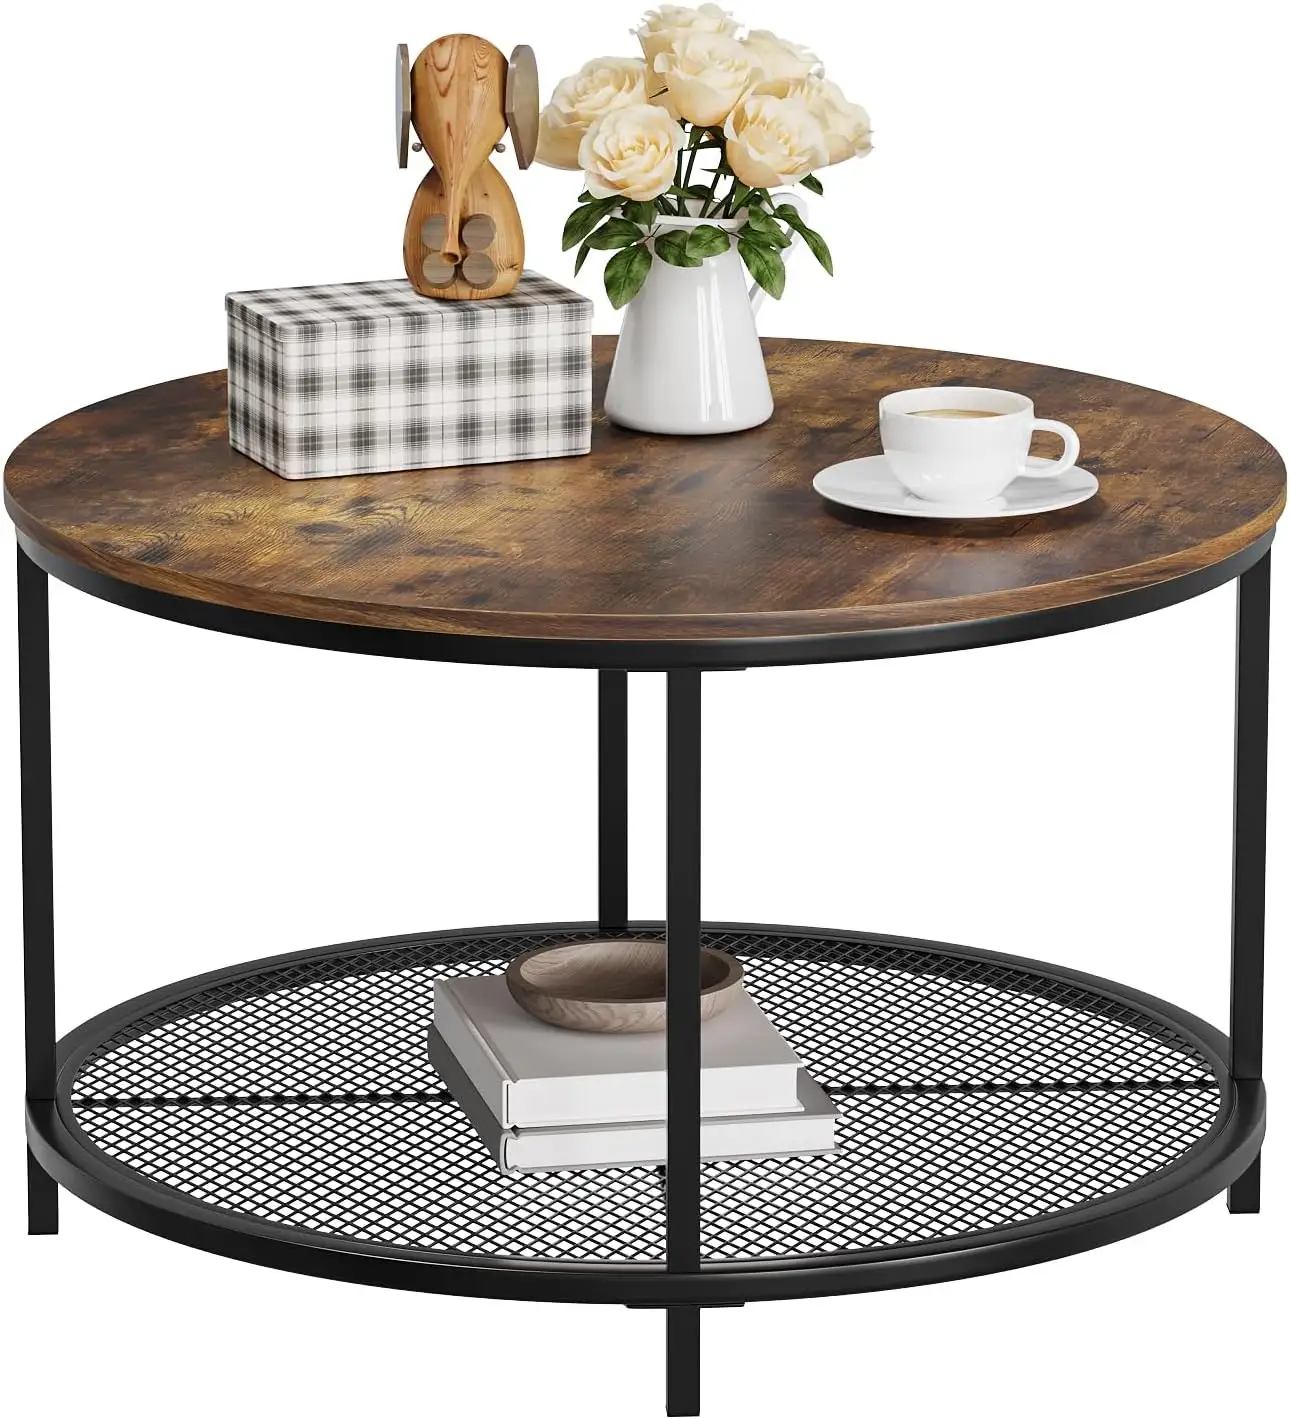 مجموعة طاولة قهوة من الخشب دائرية بطبقة مزدوجة جانبية للطاولة في غرفة النوم وغرفة المعيشة بالمنزل بسعر رخيص